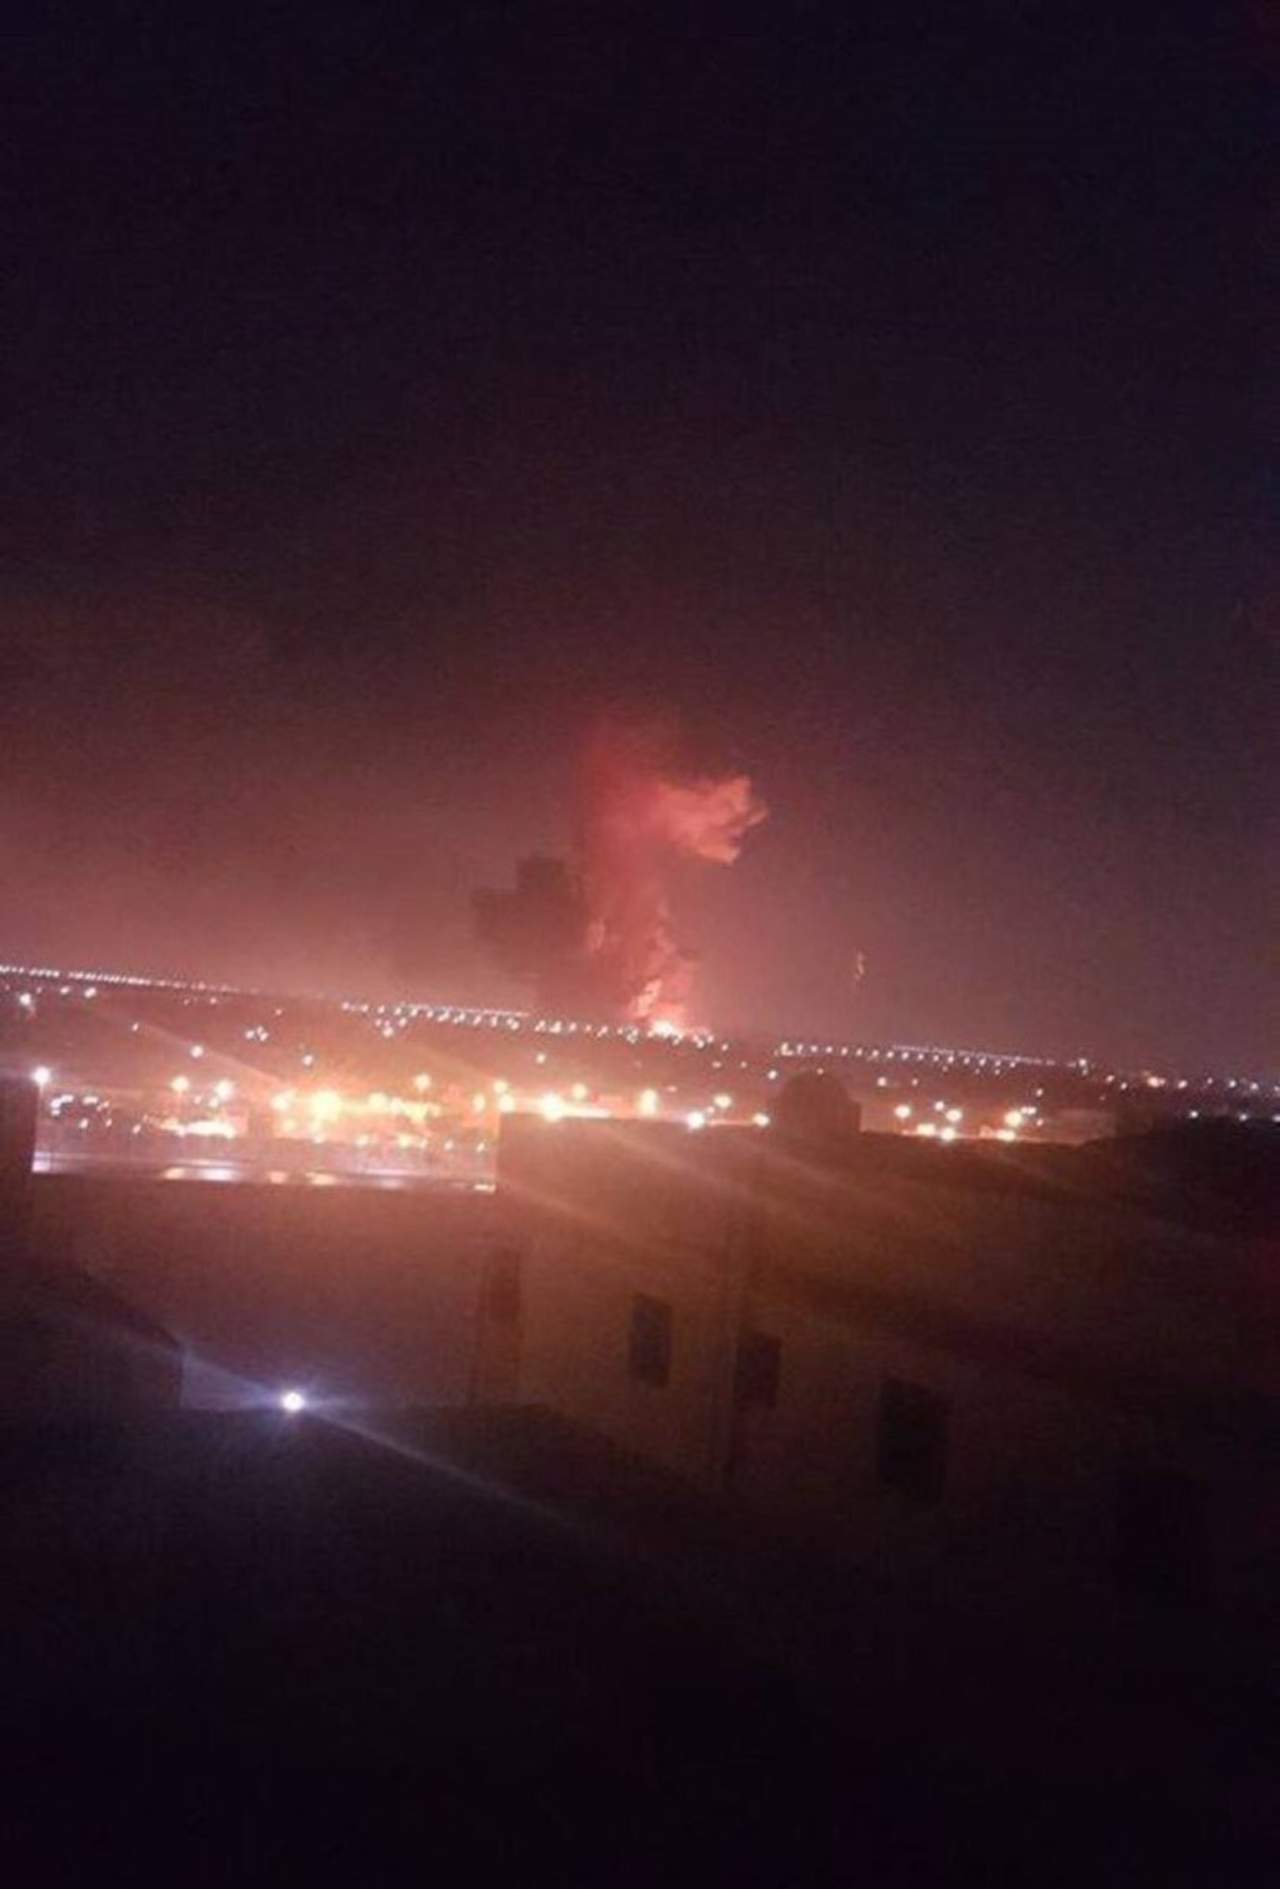 La explosión se escuchó por los residentes que viven en el barrio aledaño al aeródromo, situado en el norte de El Cairo, según la fuente. (TWITTER)